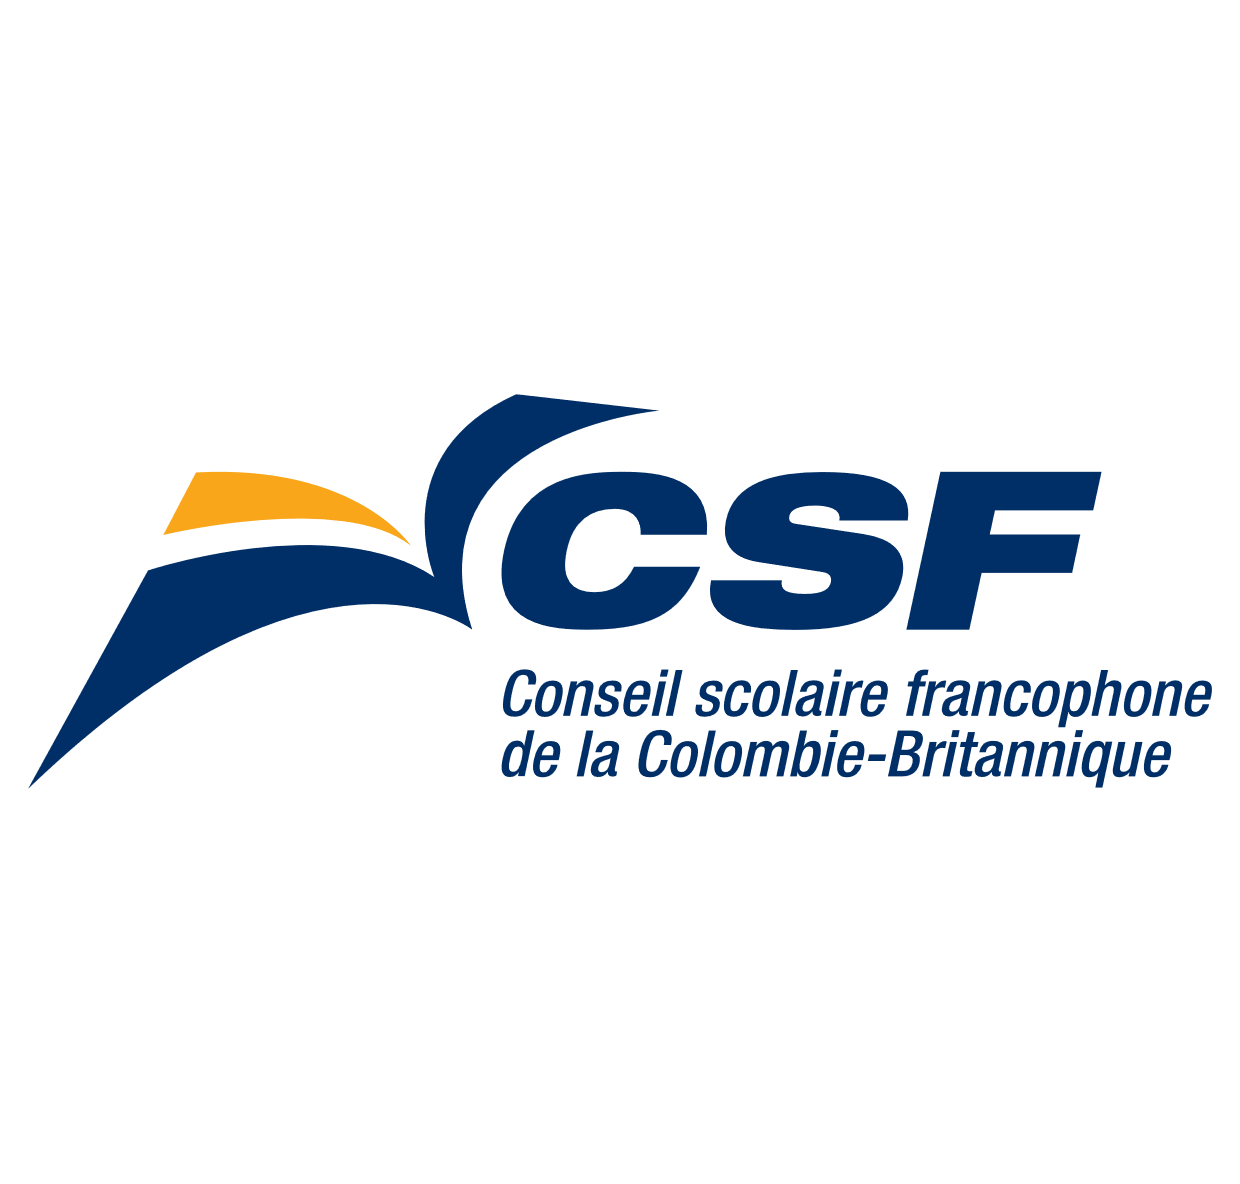 Conseil scolaire francophone de la cb